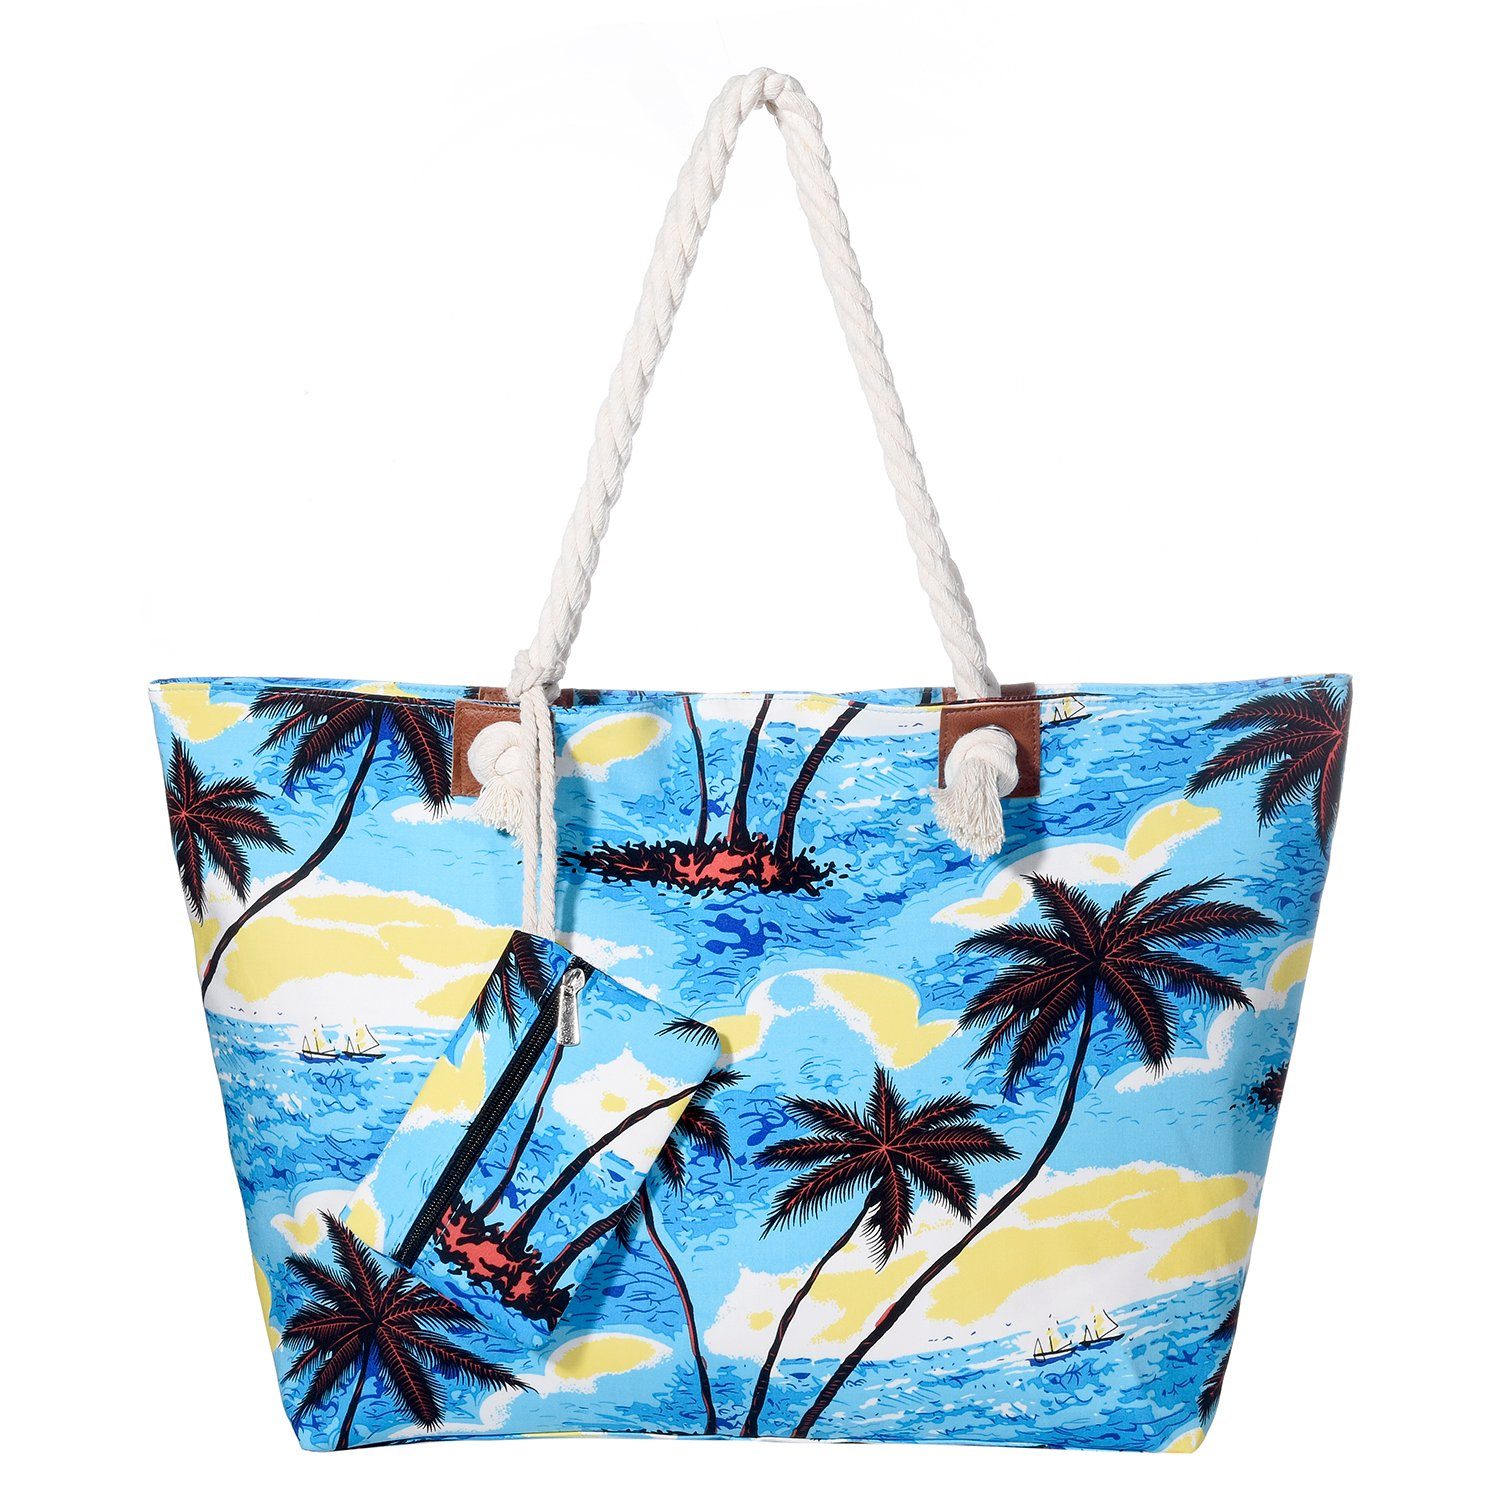 DonDon Strandtasche Shopper wasserabweisende Tasche (2-tlg), Große Strandtasche, mit Reißverschluss, inkl. kleinem Beutel Beach life